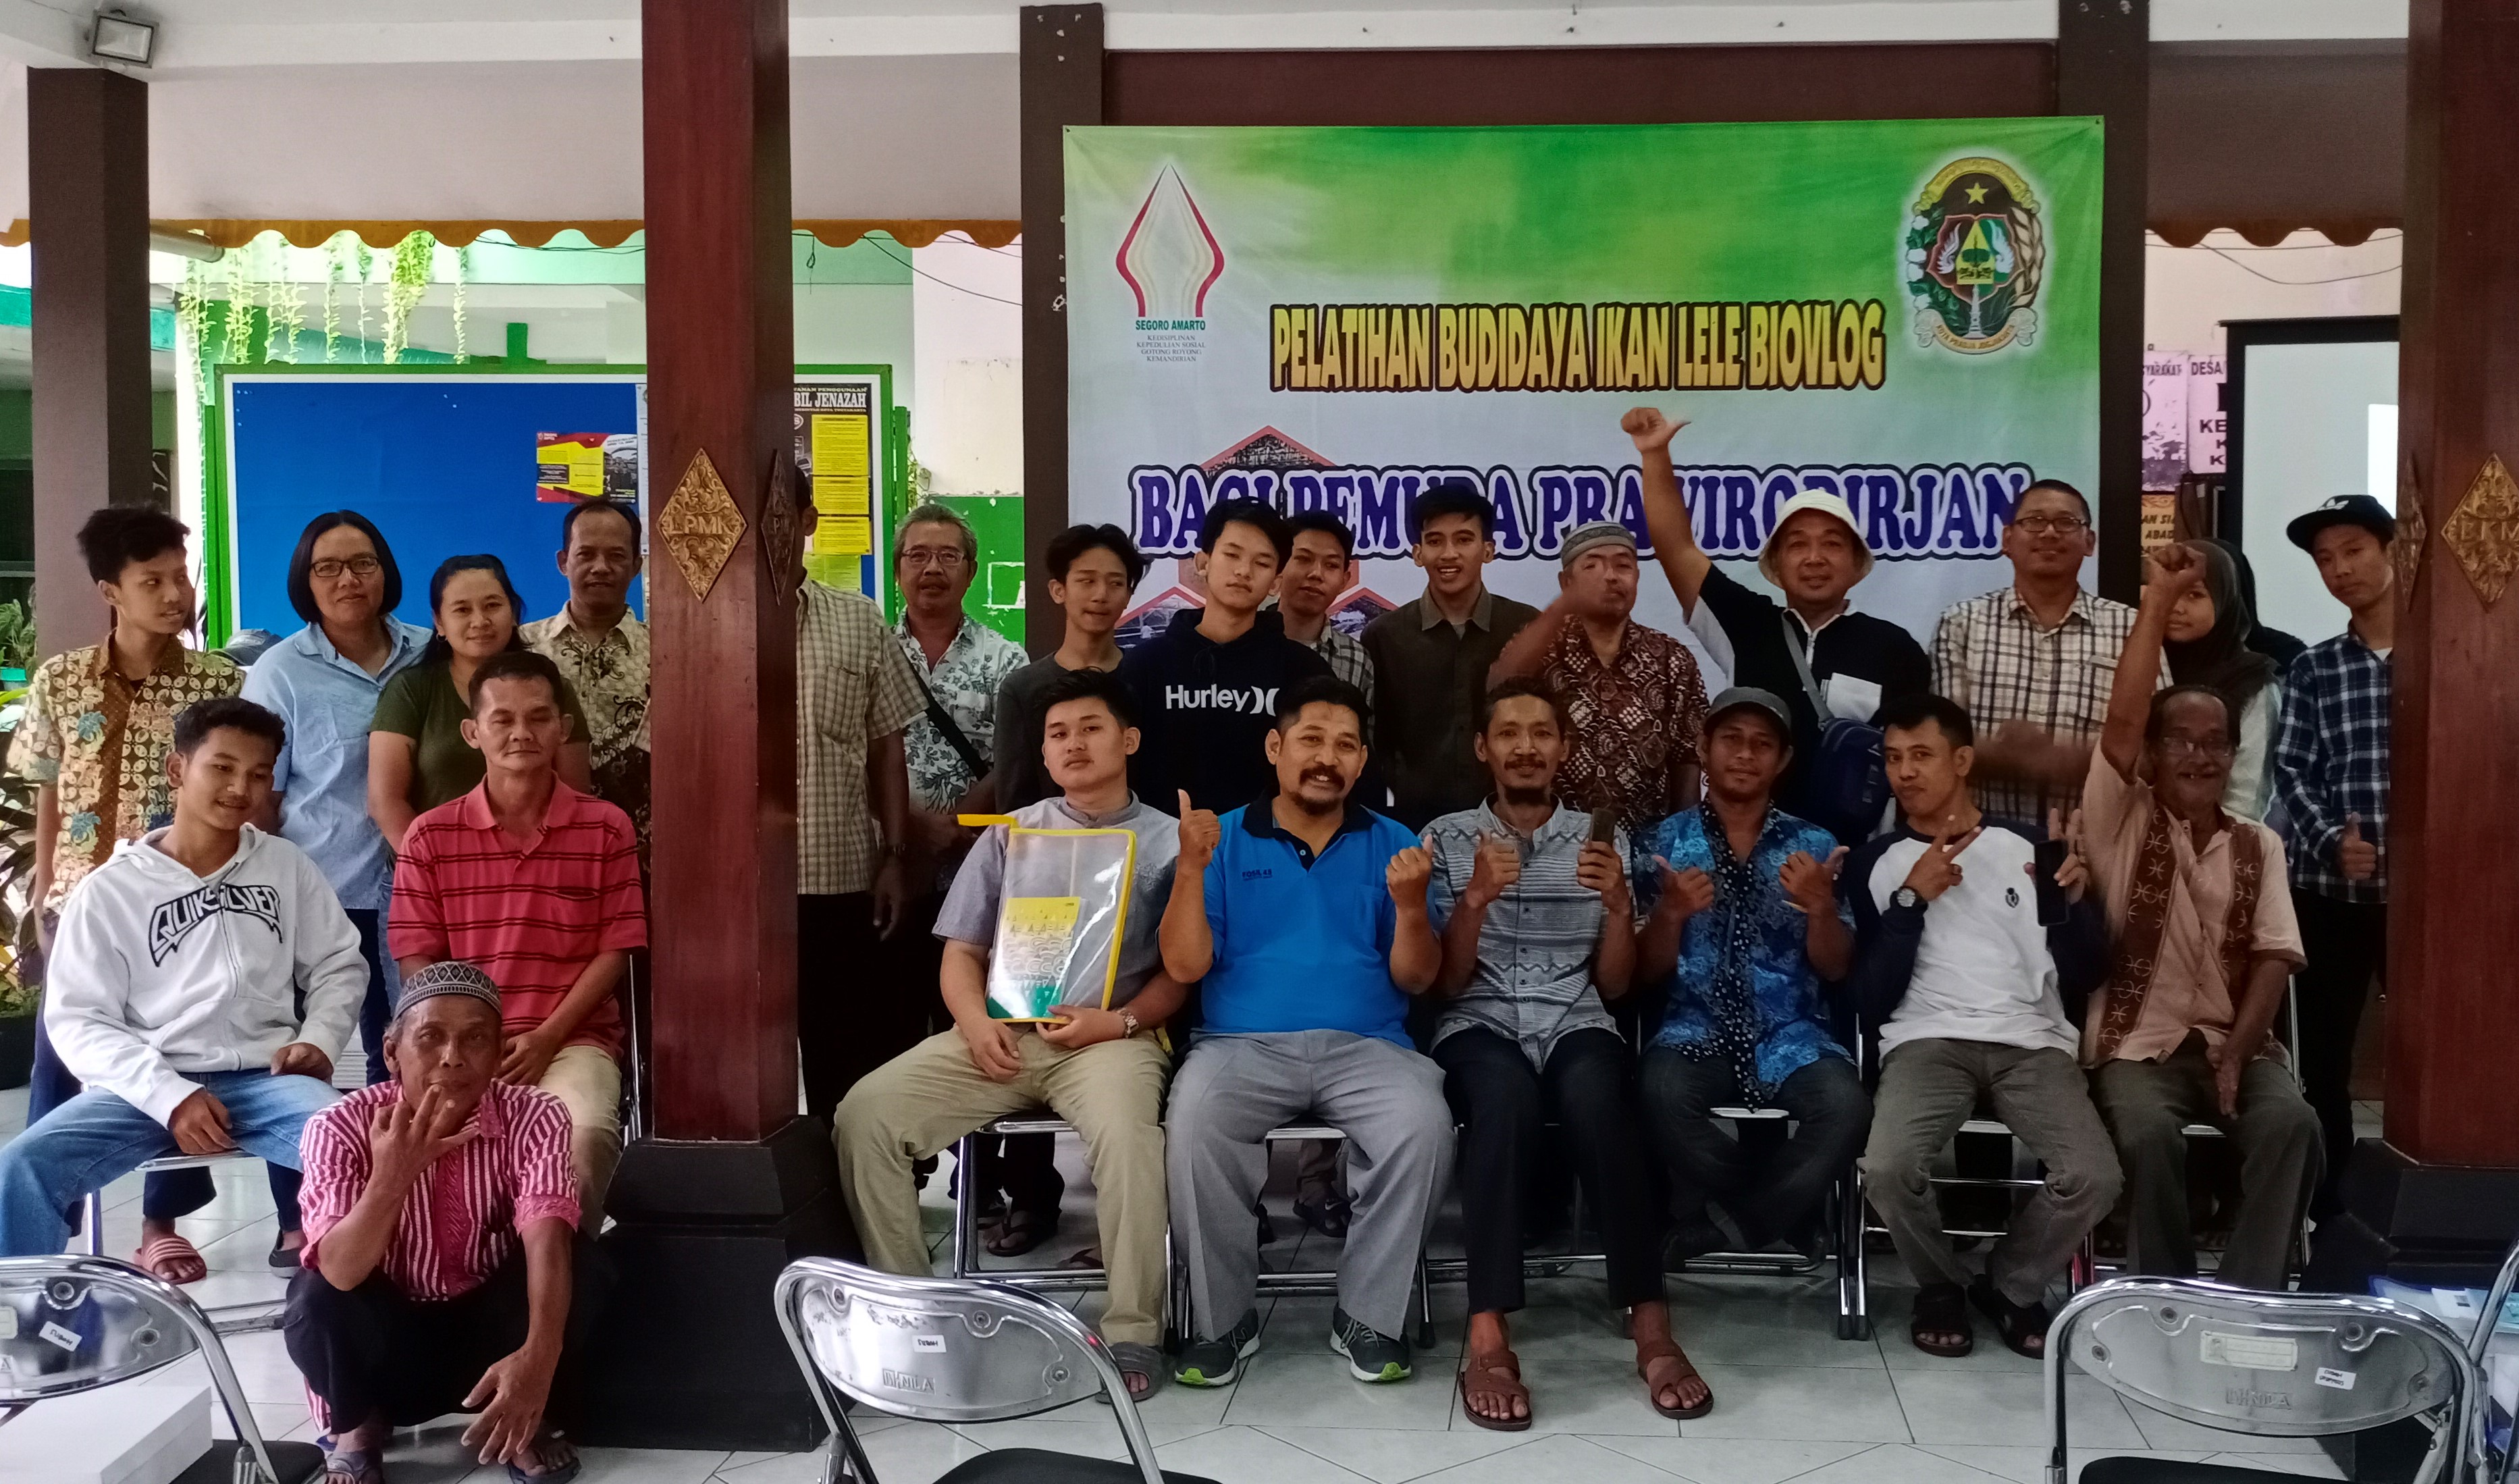 Pelatihan Budi Daya Lele Biovlog Bagi Pemuda Kelurahan Prawirodirjan